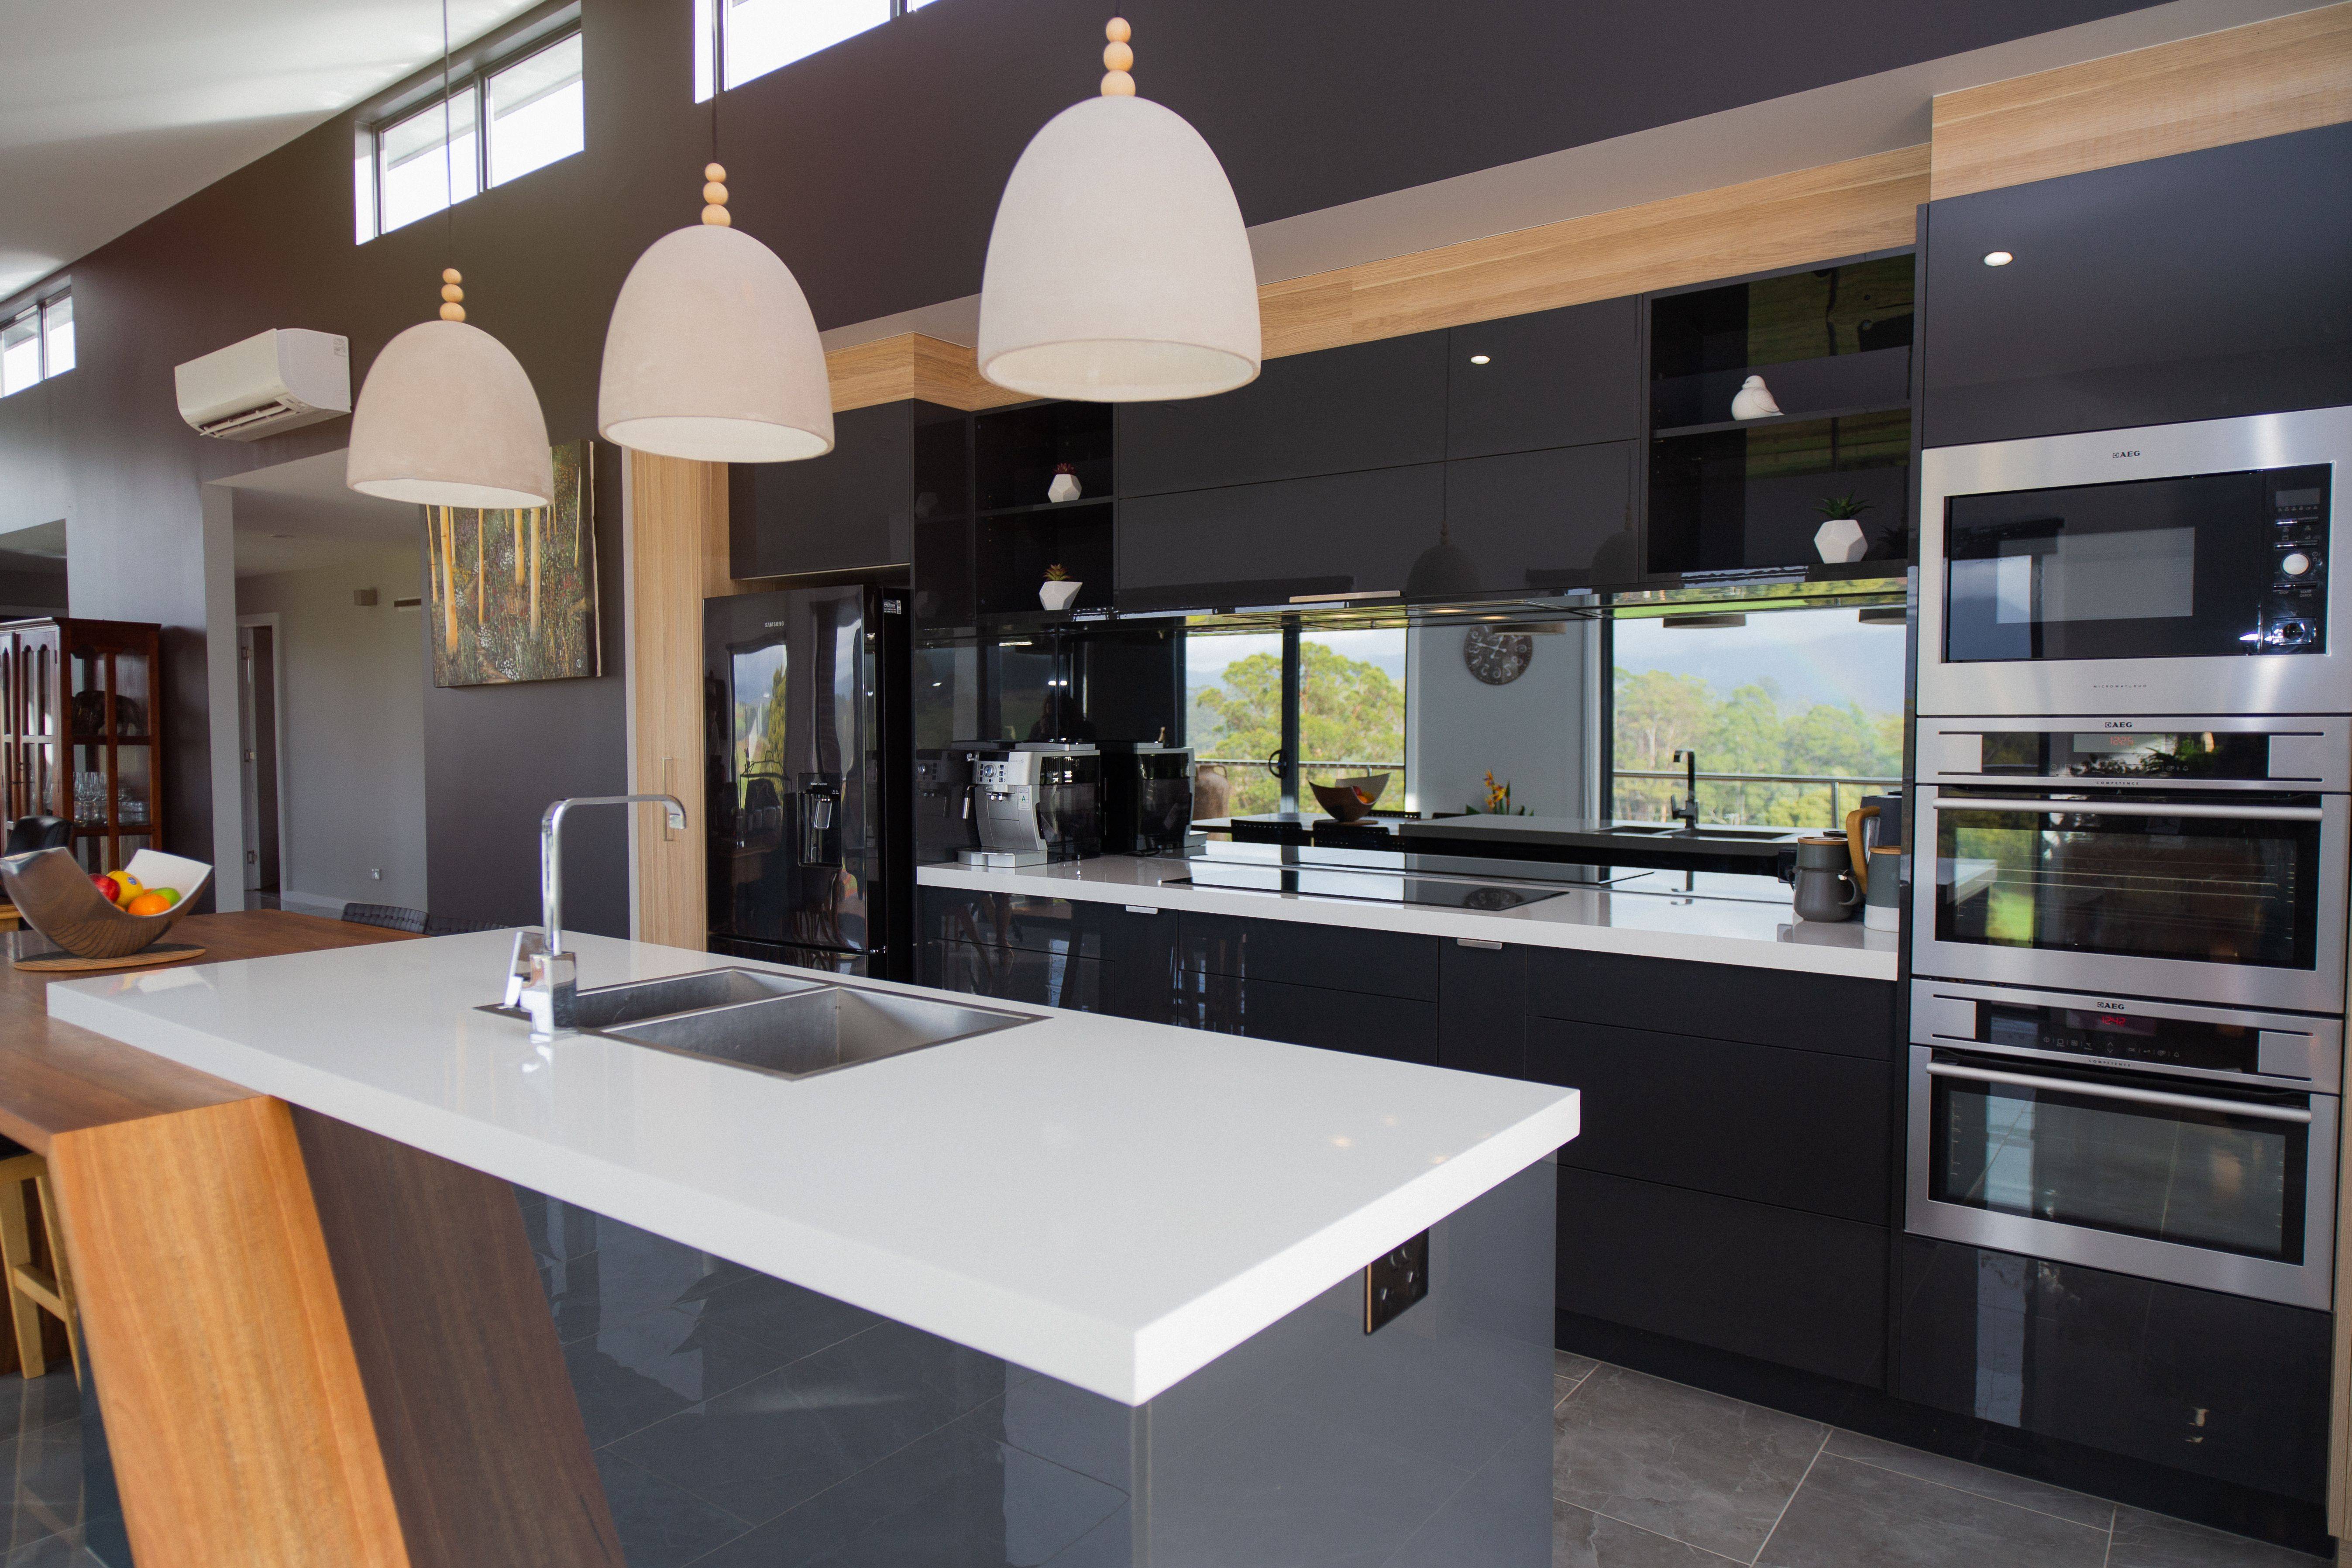 Luxury Modern Kitchen Designs Photo Gallery - Image to u